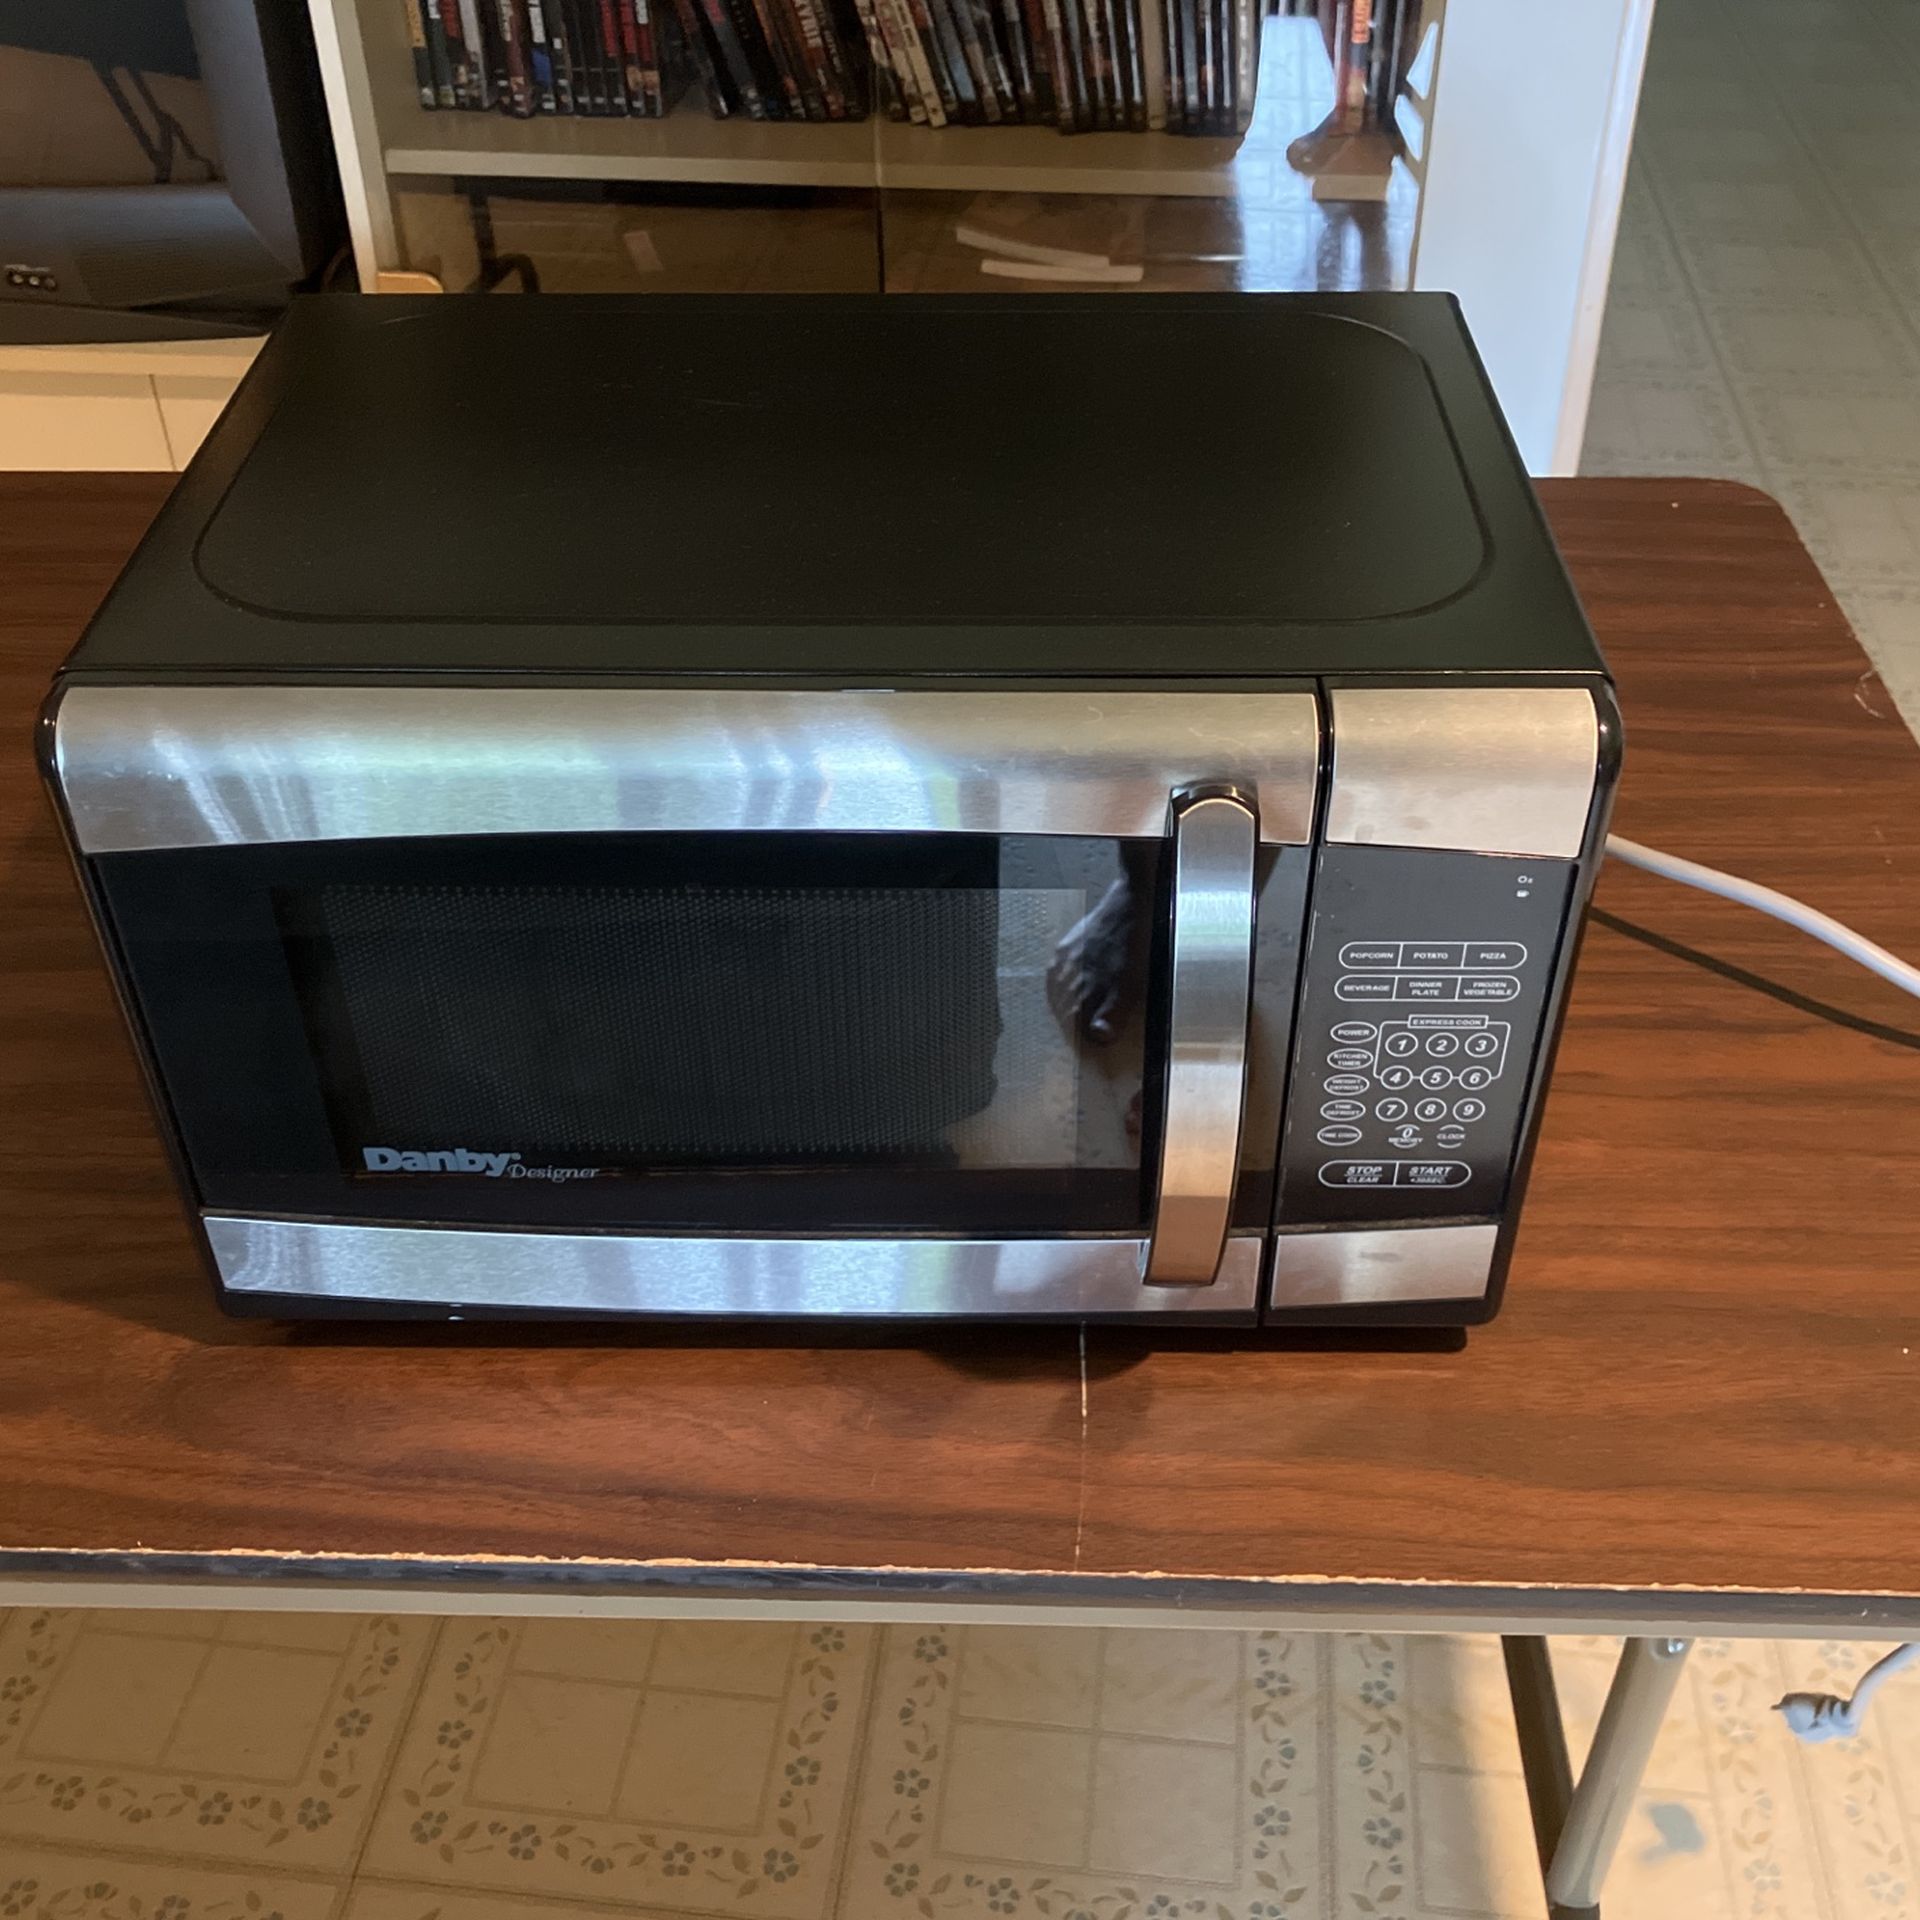 Danby Microwave (10” H x 17” L x 12” W)